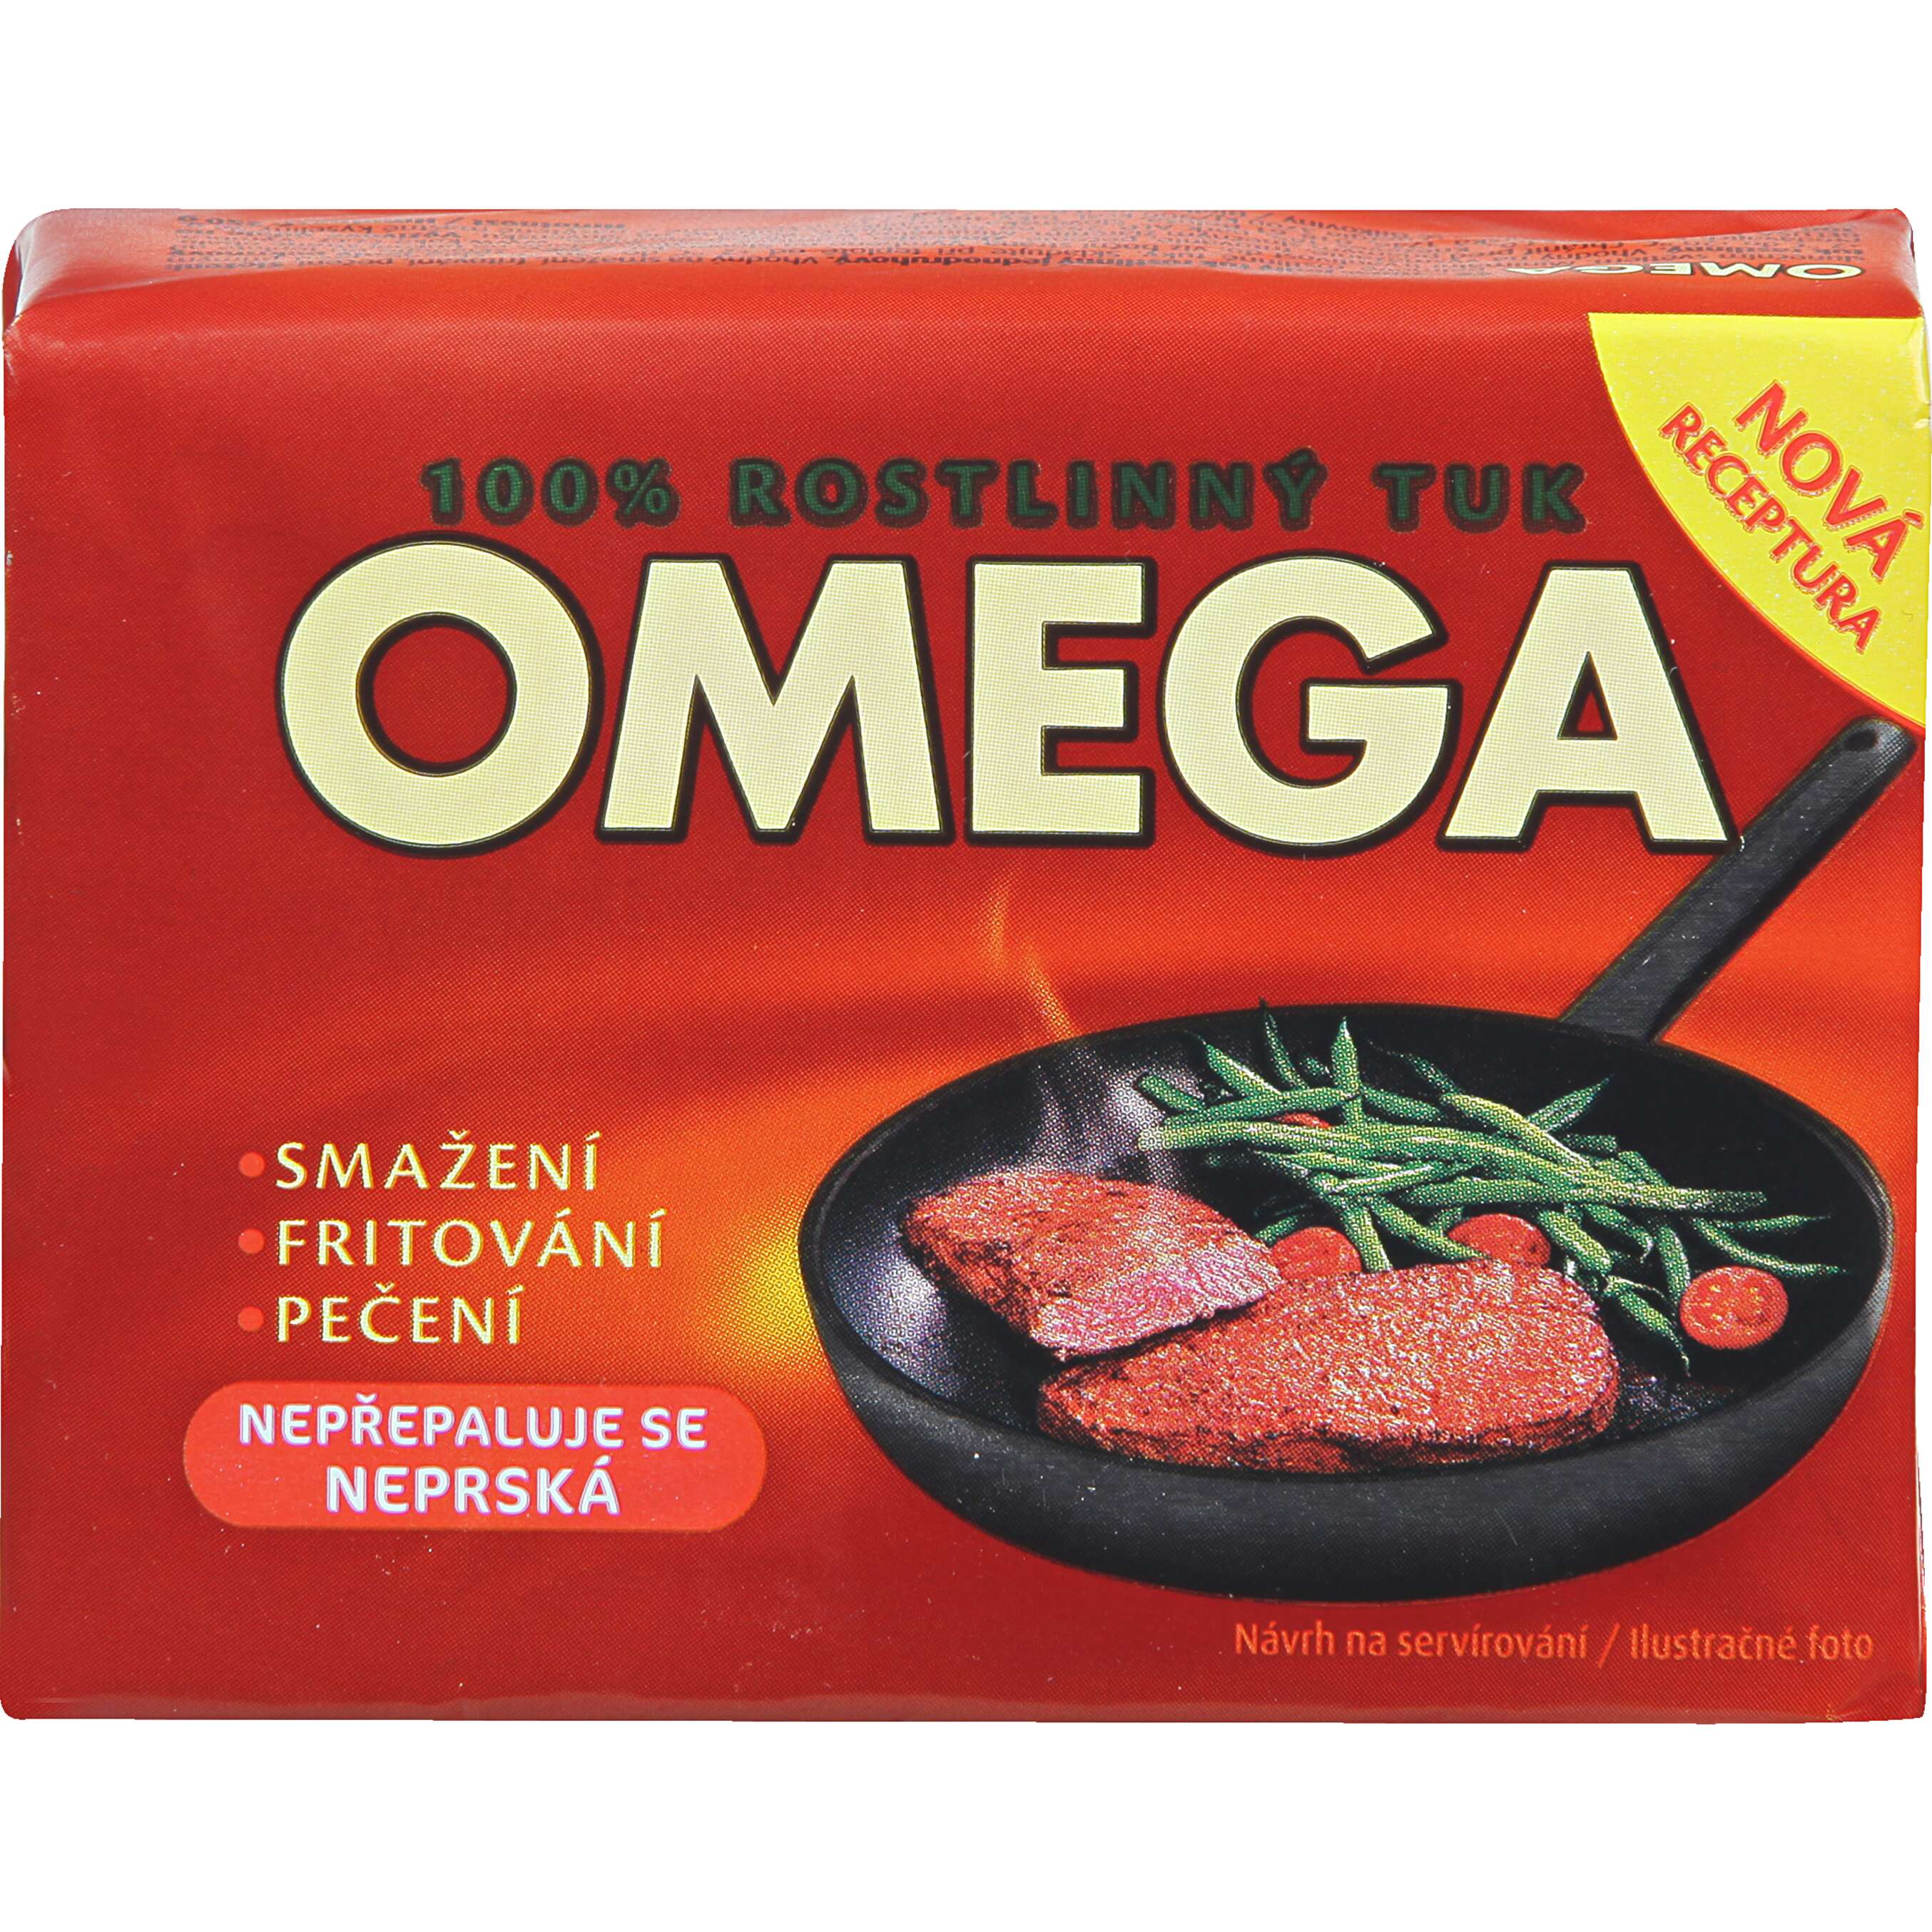 Zobrazit nabídku Omega Rostlinný tuk